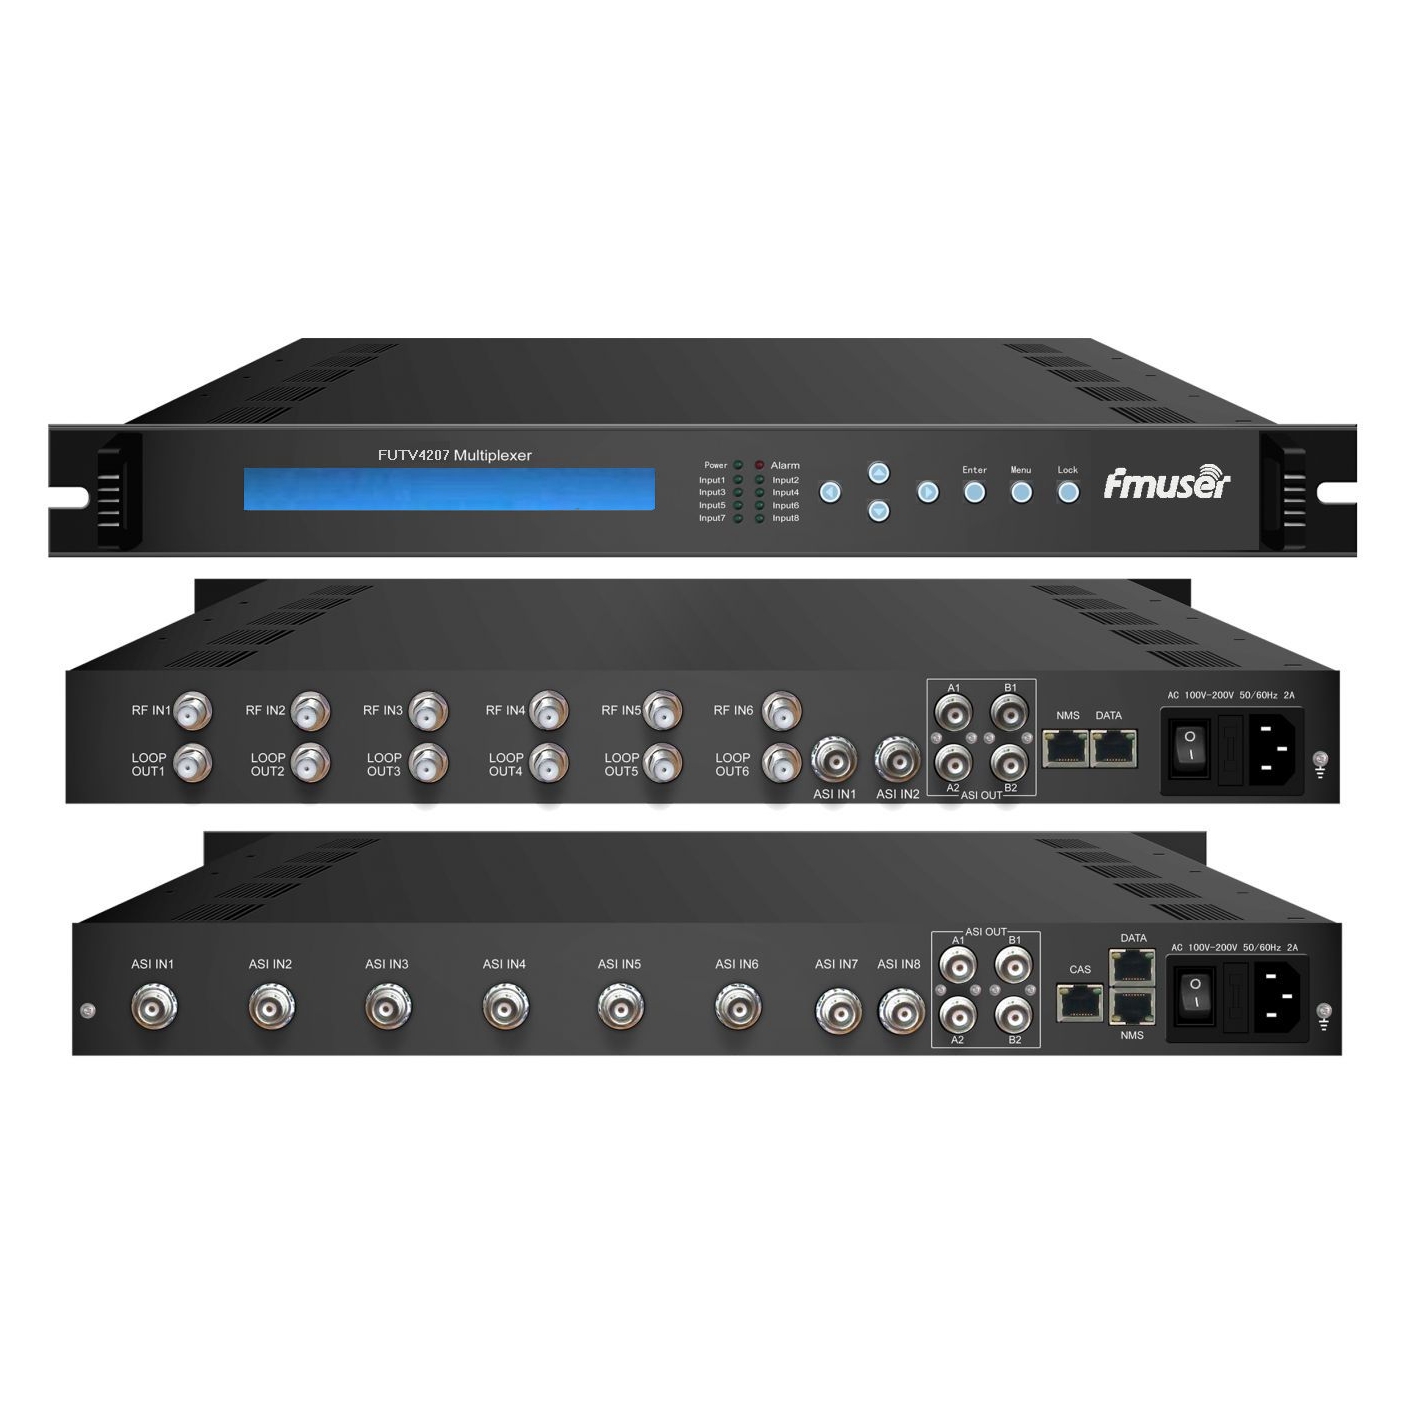 FMUSER FUTV4207X-serie 6 Tuner IRD (2 ASI + 6 DVB-C / DVB-S / DVB-S2 / DVB-T / ISDB / ATSC 8VSB RF-ingång, 8 ASI In, 2 ASI IP-utgång) Multiplexer